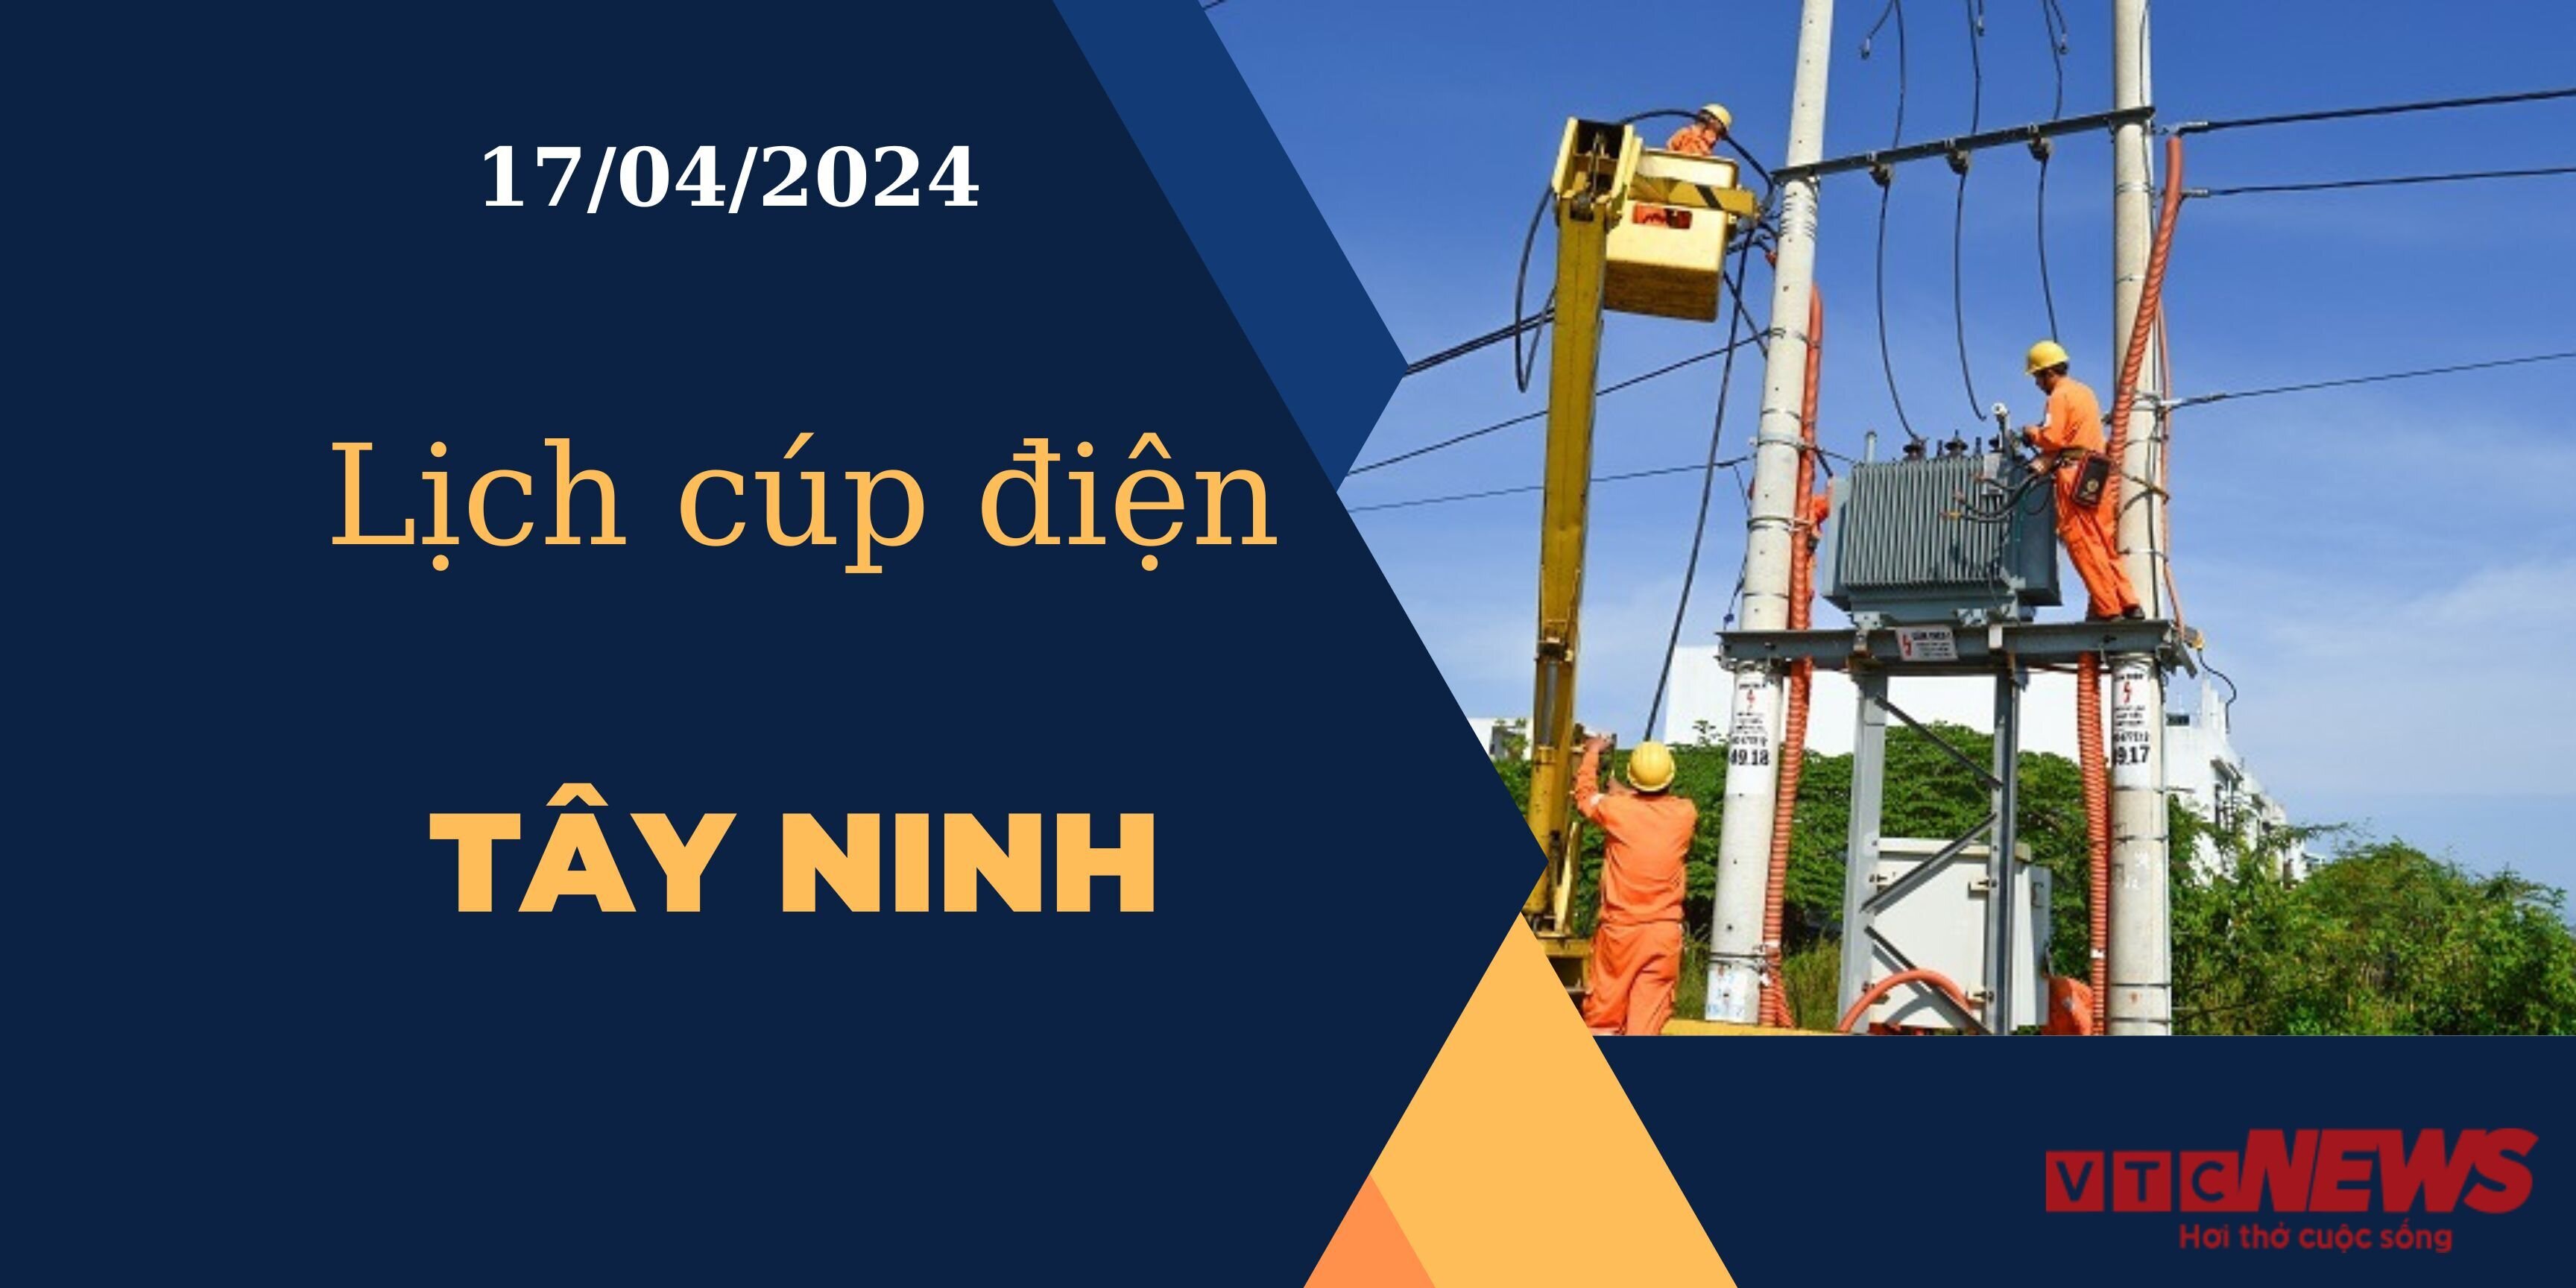 Lịch cúp điện hôm nay ngày 17/04/2024 tại Tây Ninh